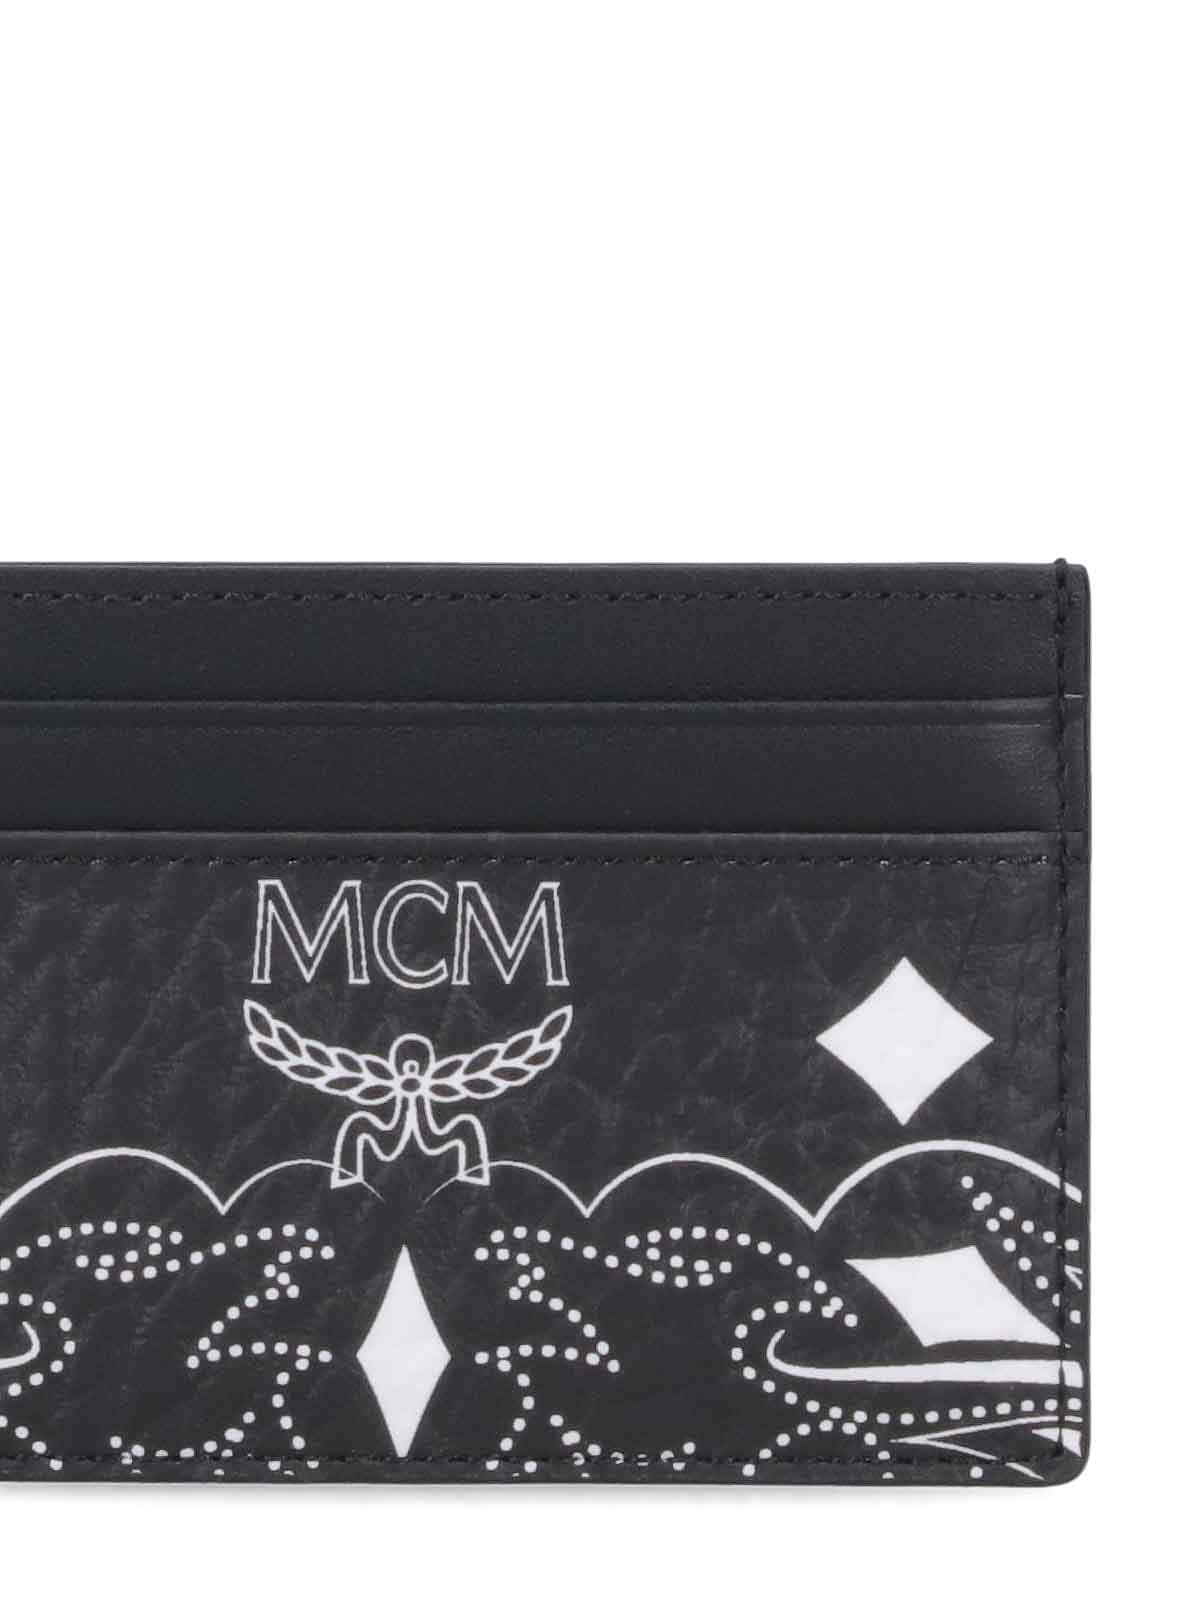 MCM Long Wallets for Women